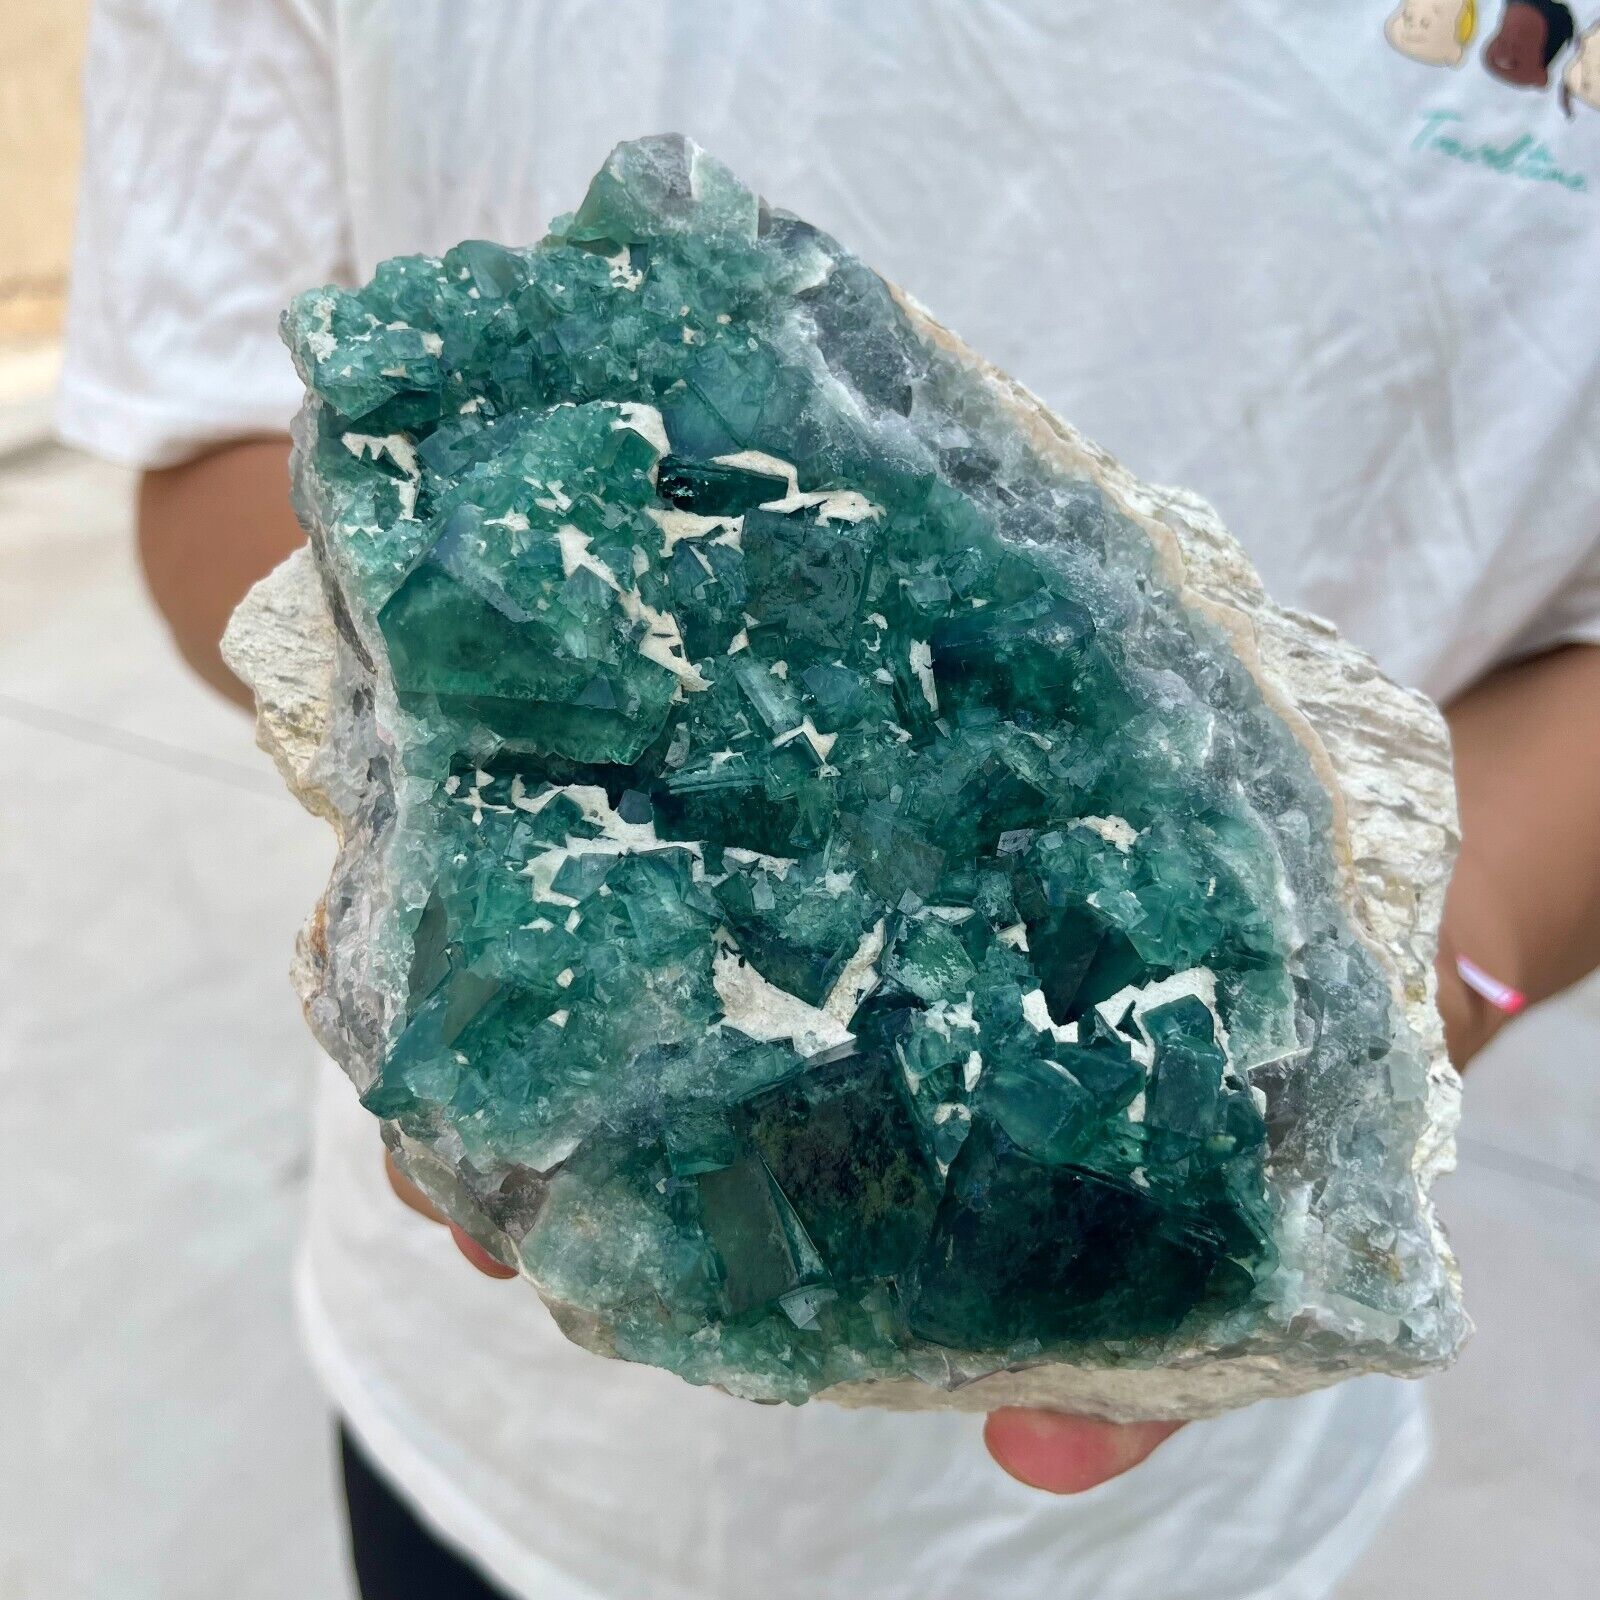 3.9lb Large NATURAL Green Cube FLUORITE Quartz Crystal Cluster Mineral Specimen